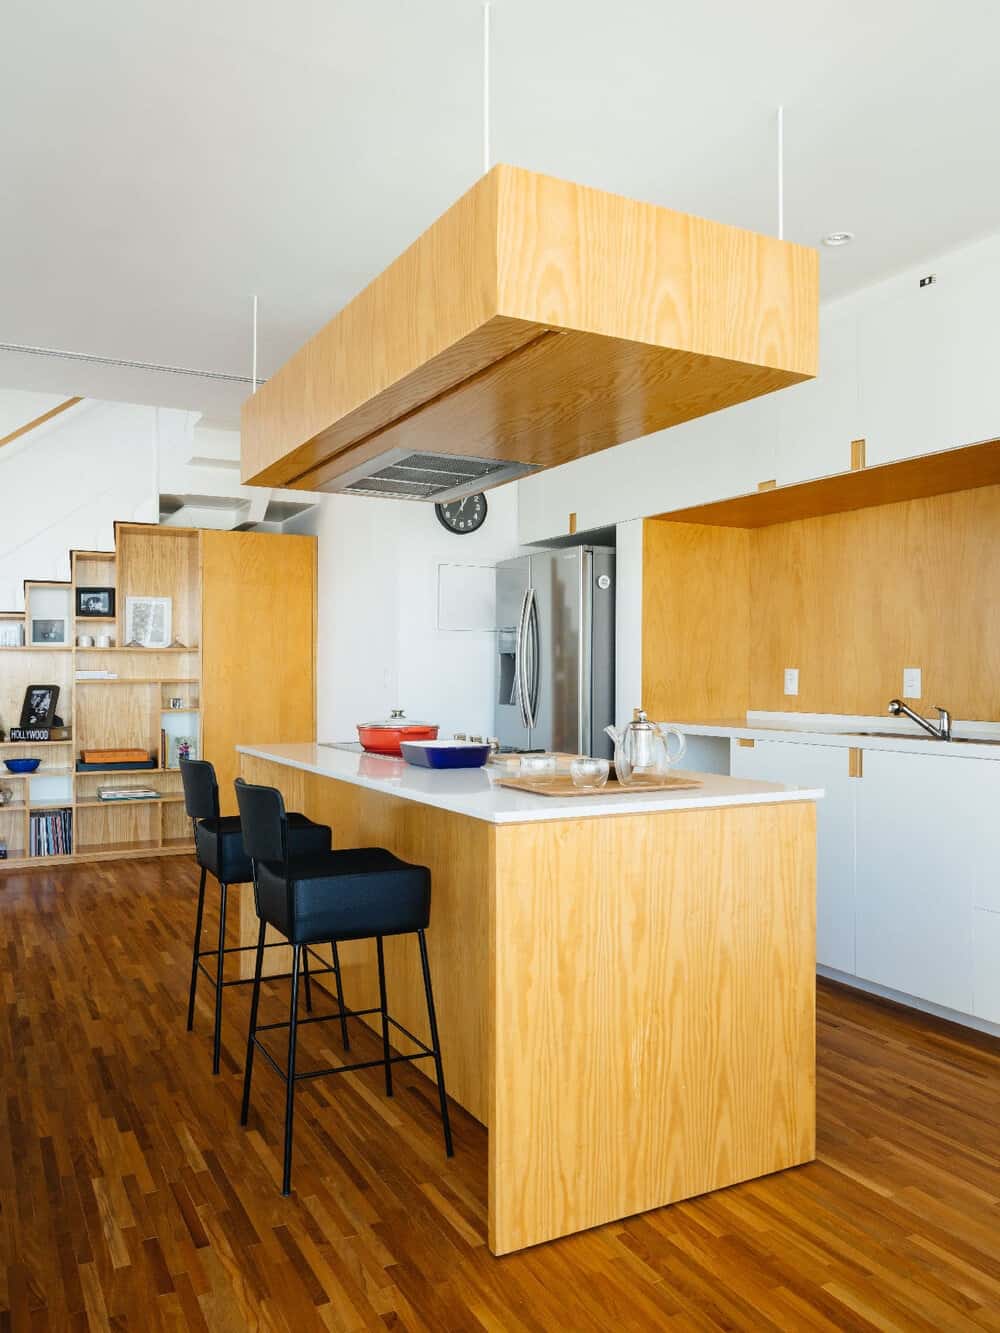 这是厨房区域的近距离观察，有一个大的厨房岛台，与深色硬木地板相比，它有更浅的木质色调，使其脱颖而出。这与后挡板搭配得很好。